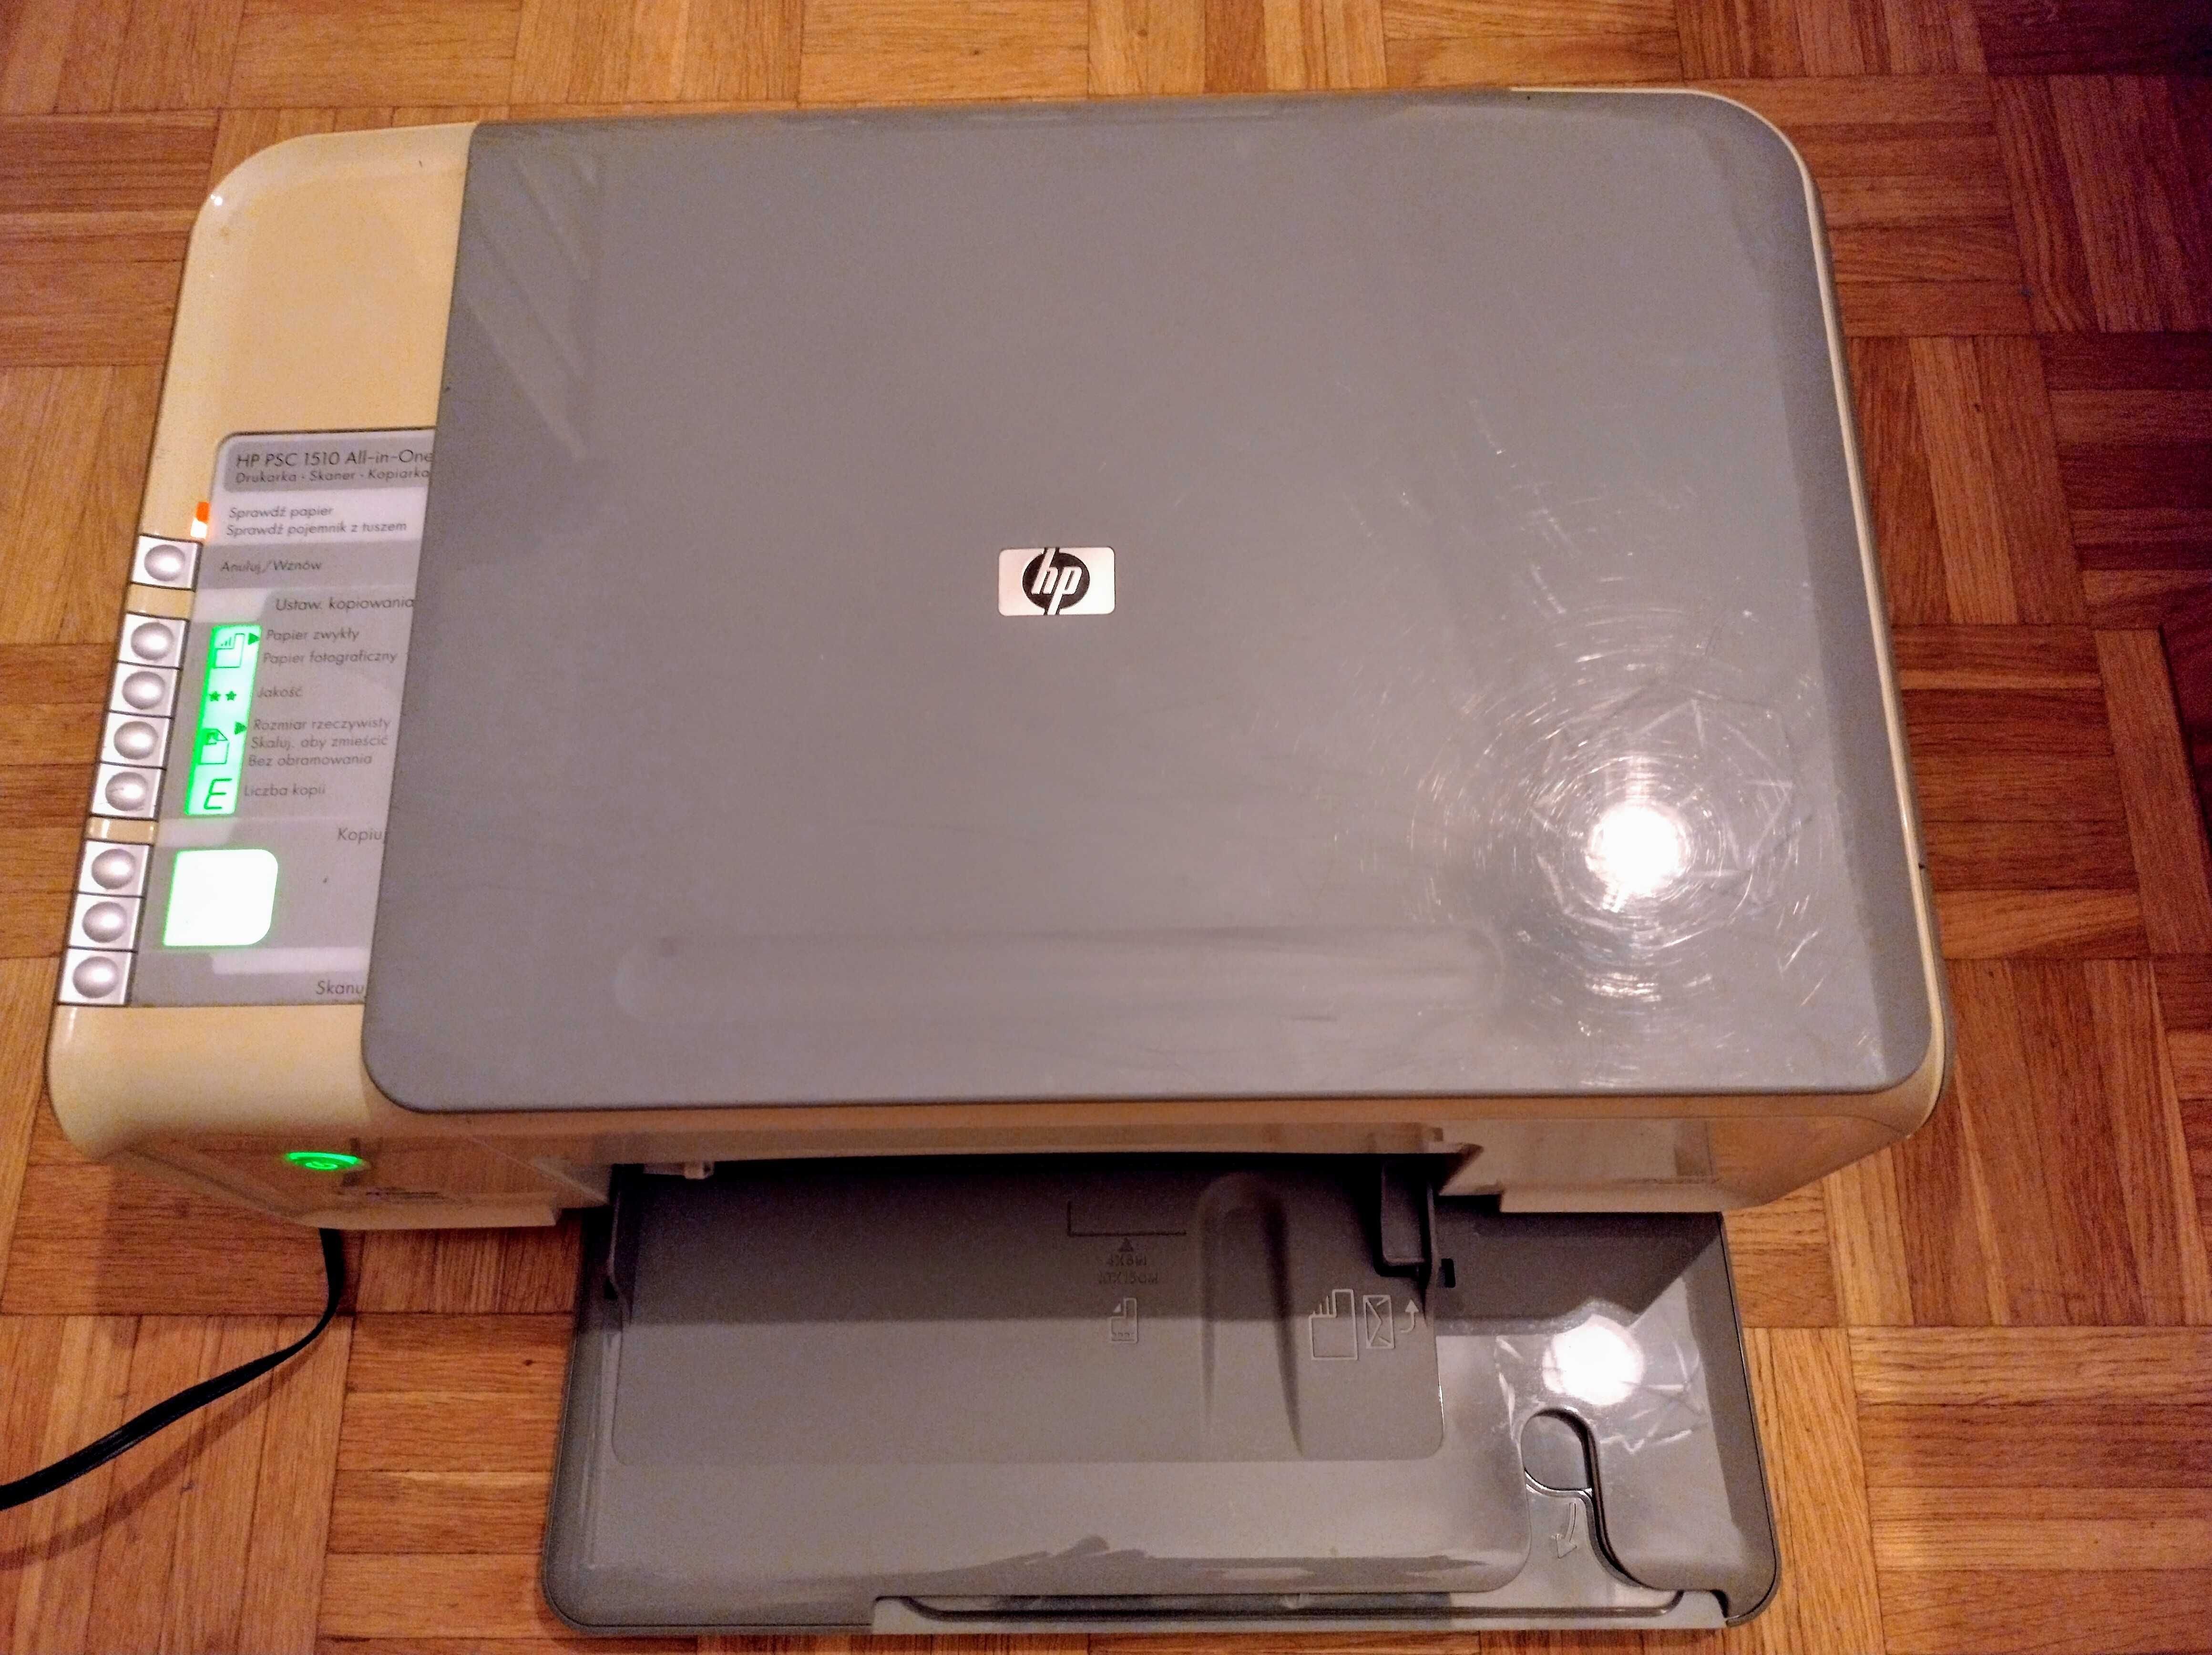 Drukarka wielofunkcyjna (skaner, kopiarka) HP PSC 1510